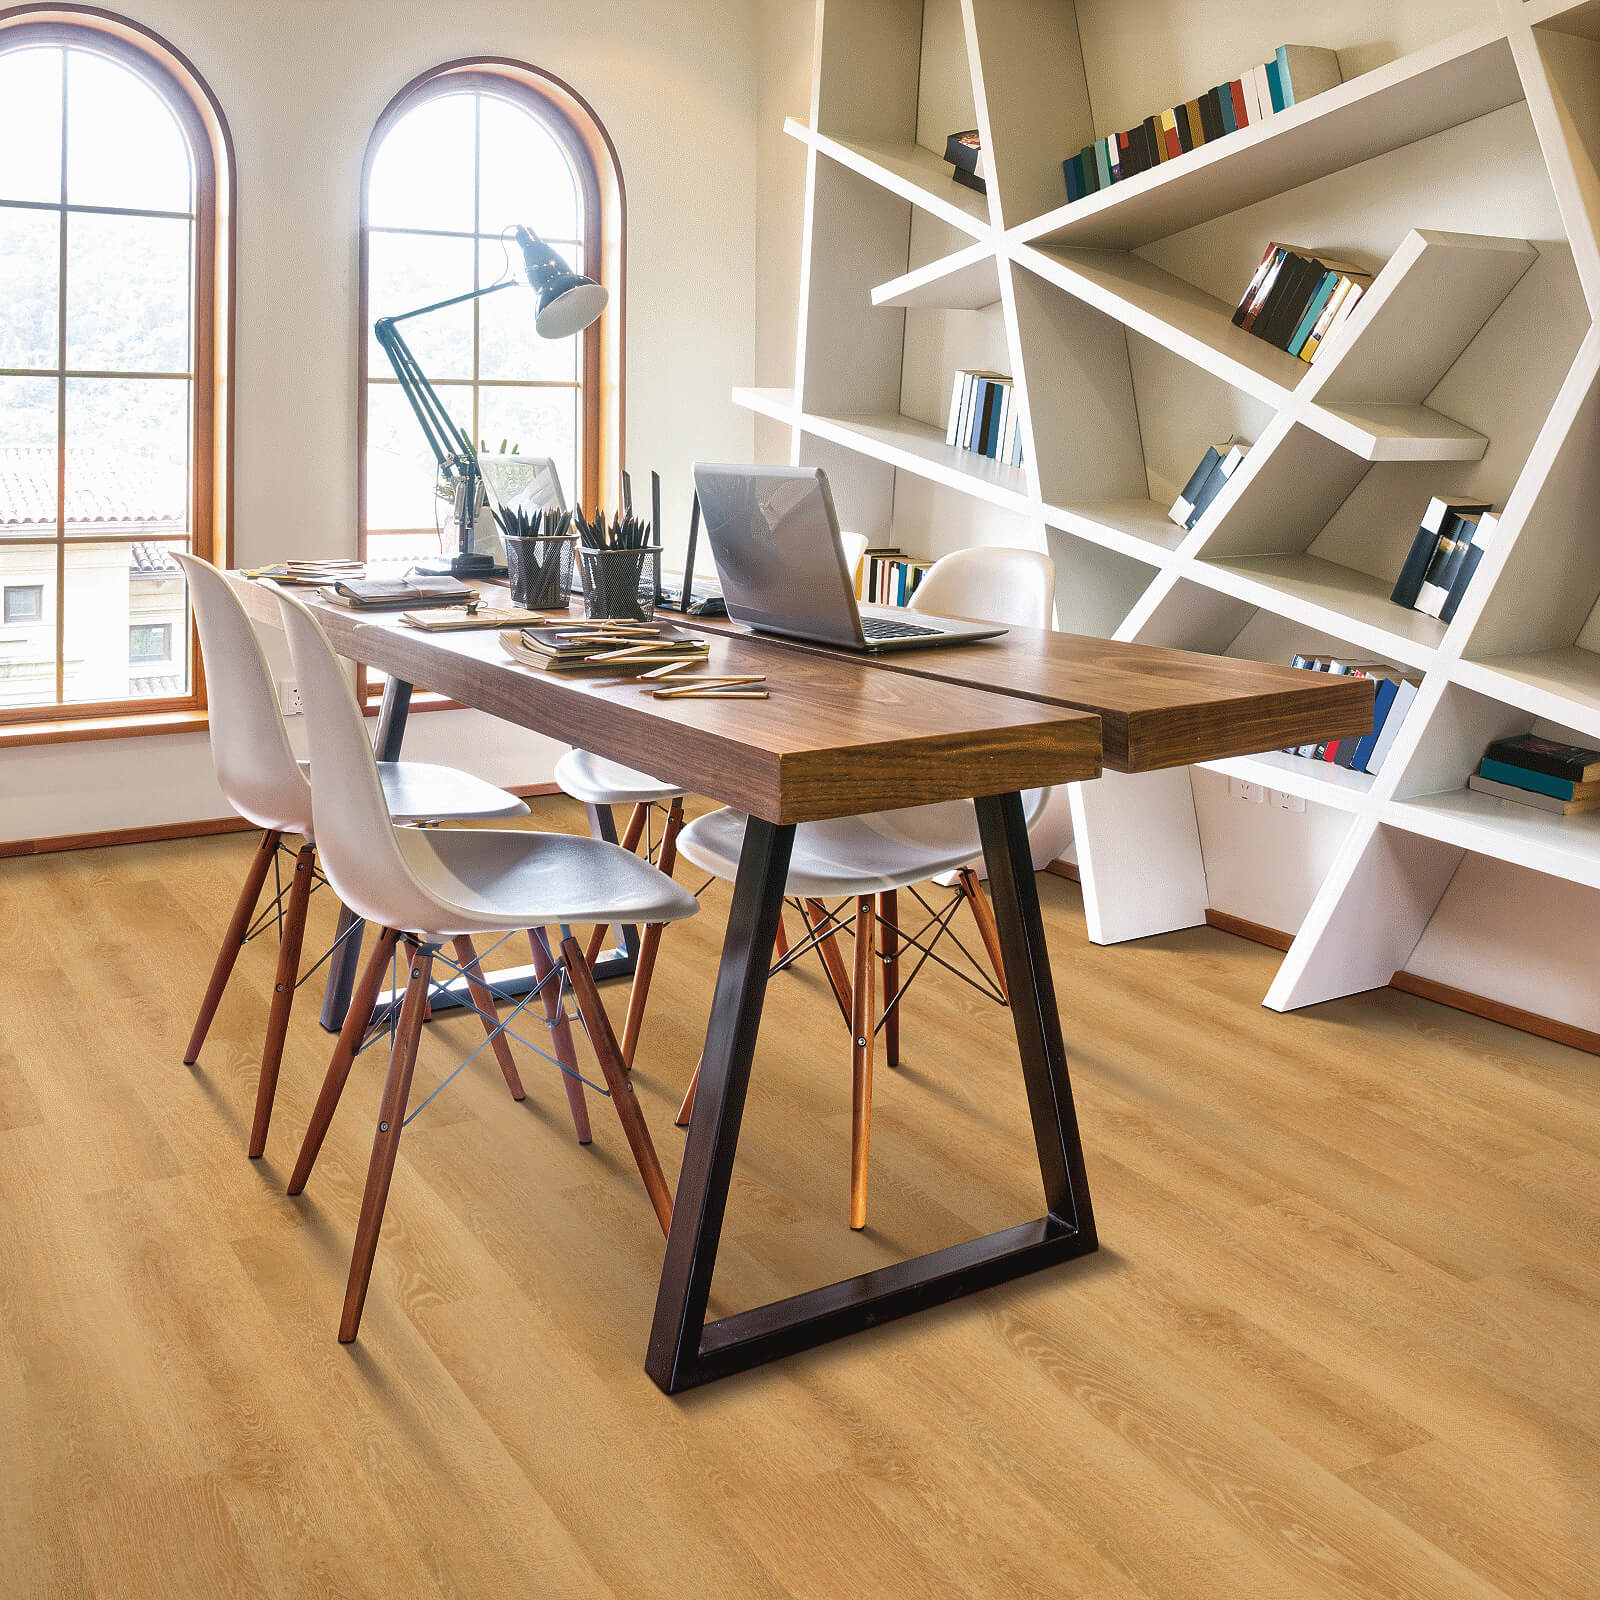 Vinyl flooring for study room | Lynch Carpet & Flooring